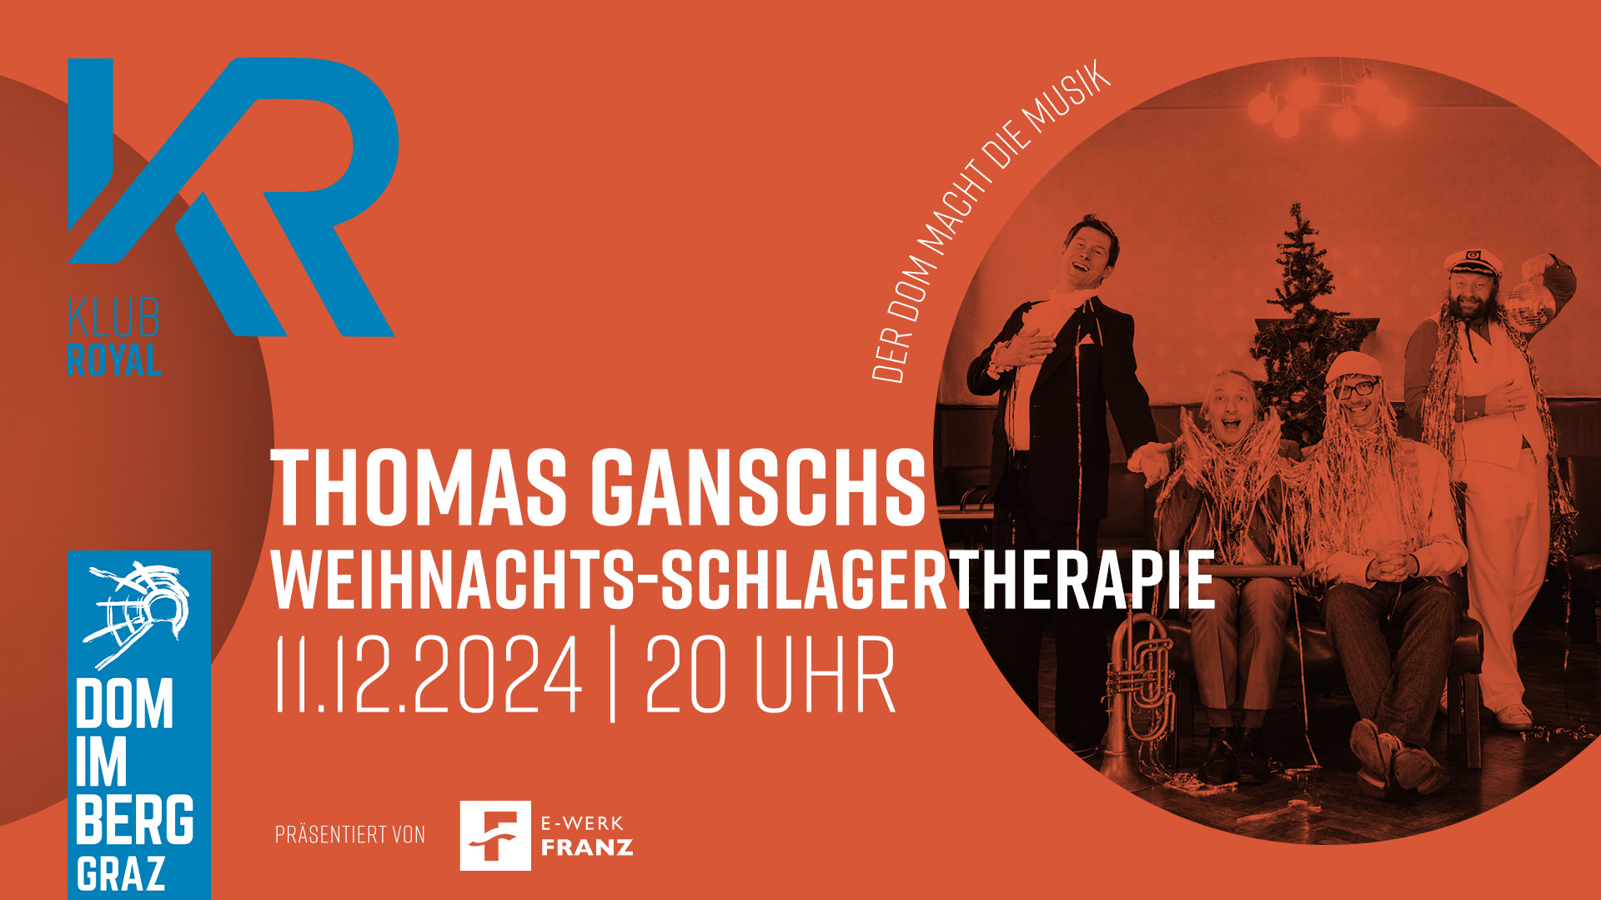 Thomas Gansch